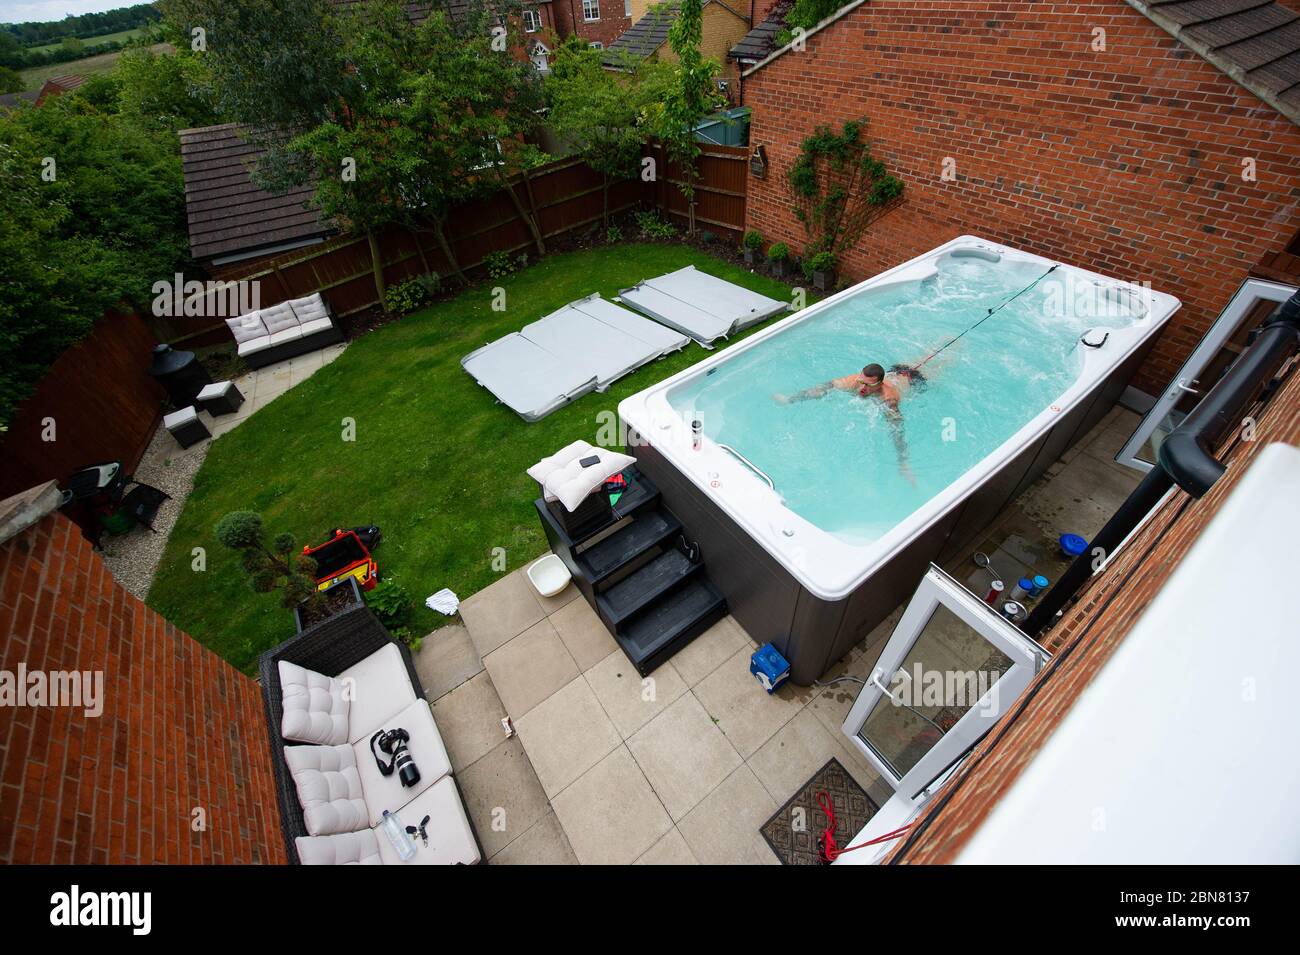 Der britische Schwimmer Adam Peaty trainiert in seinem Haus in Loughborough im Pool, der von Jacuzzi in Partnerschaft mit Bedfordshire Hot Tubs bereitgestellt wird, um es den Olympischen Schwimmern von GB zu ermöglichen, während der aktuellen britischen Sperrung weiterhin zu Hause für Tokio 2021 zu trainieren. Stockfoto